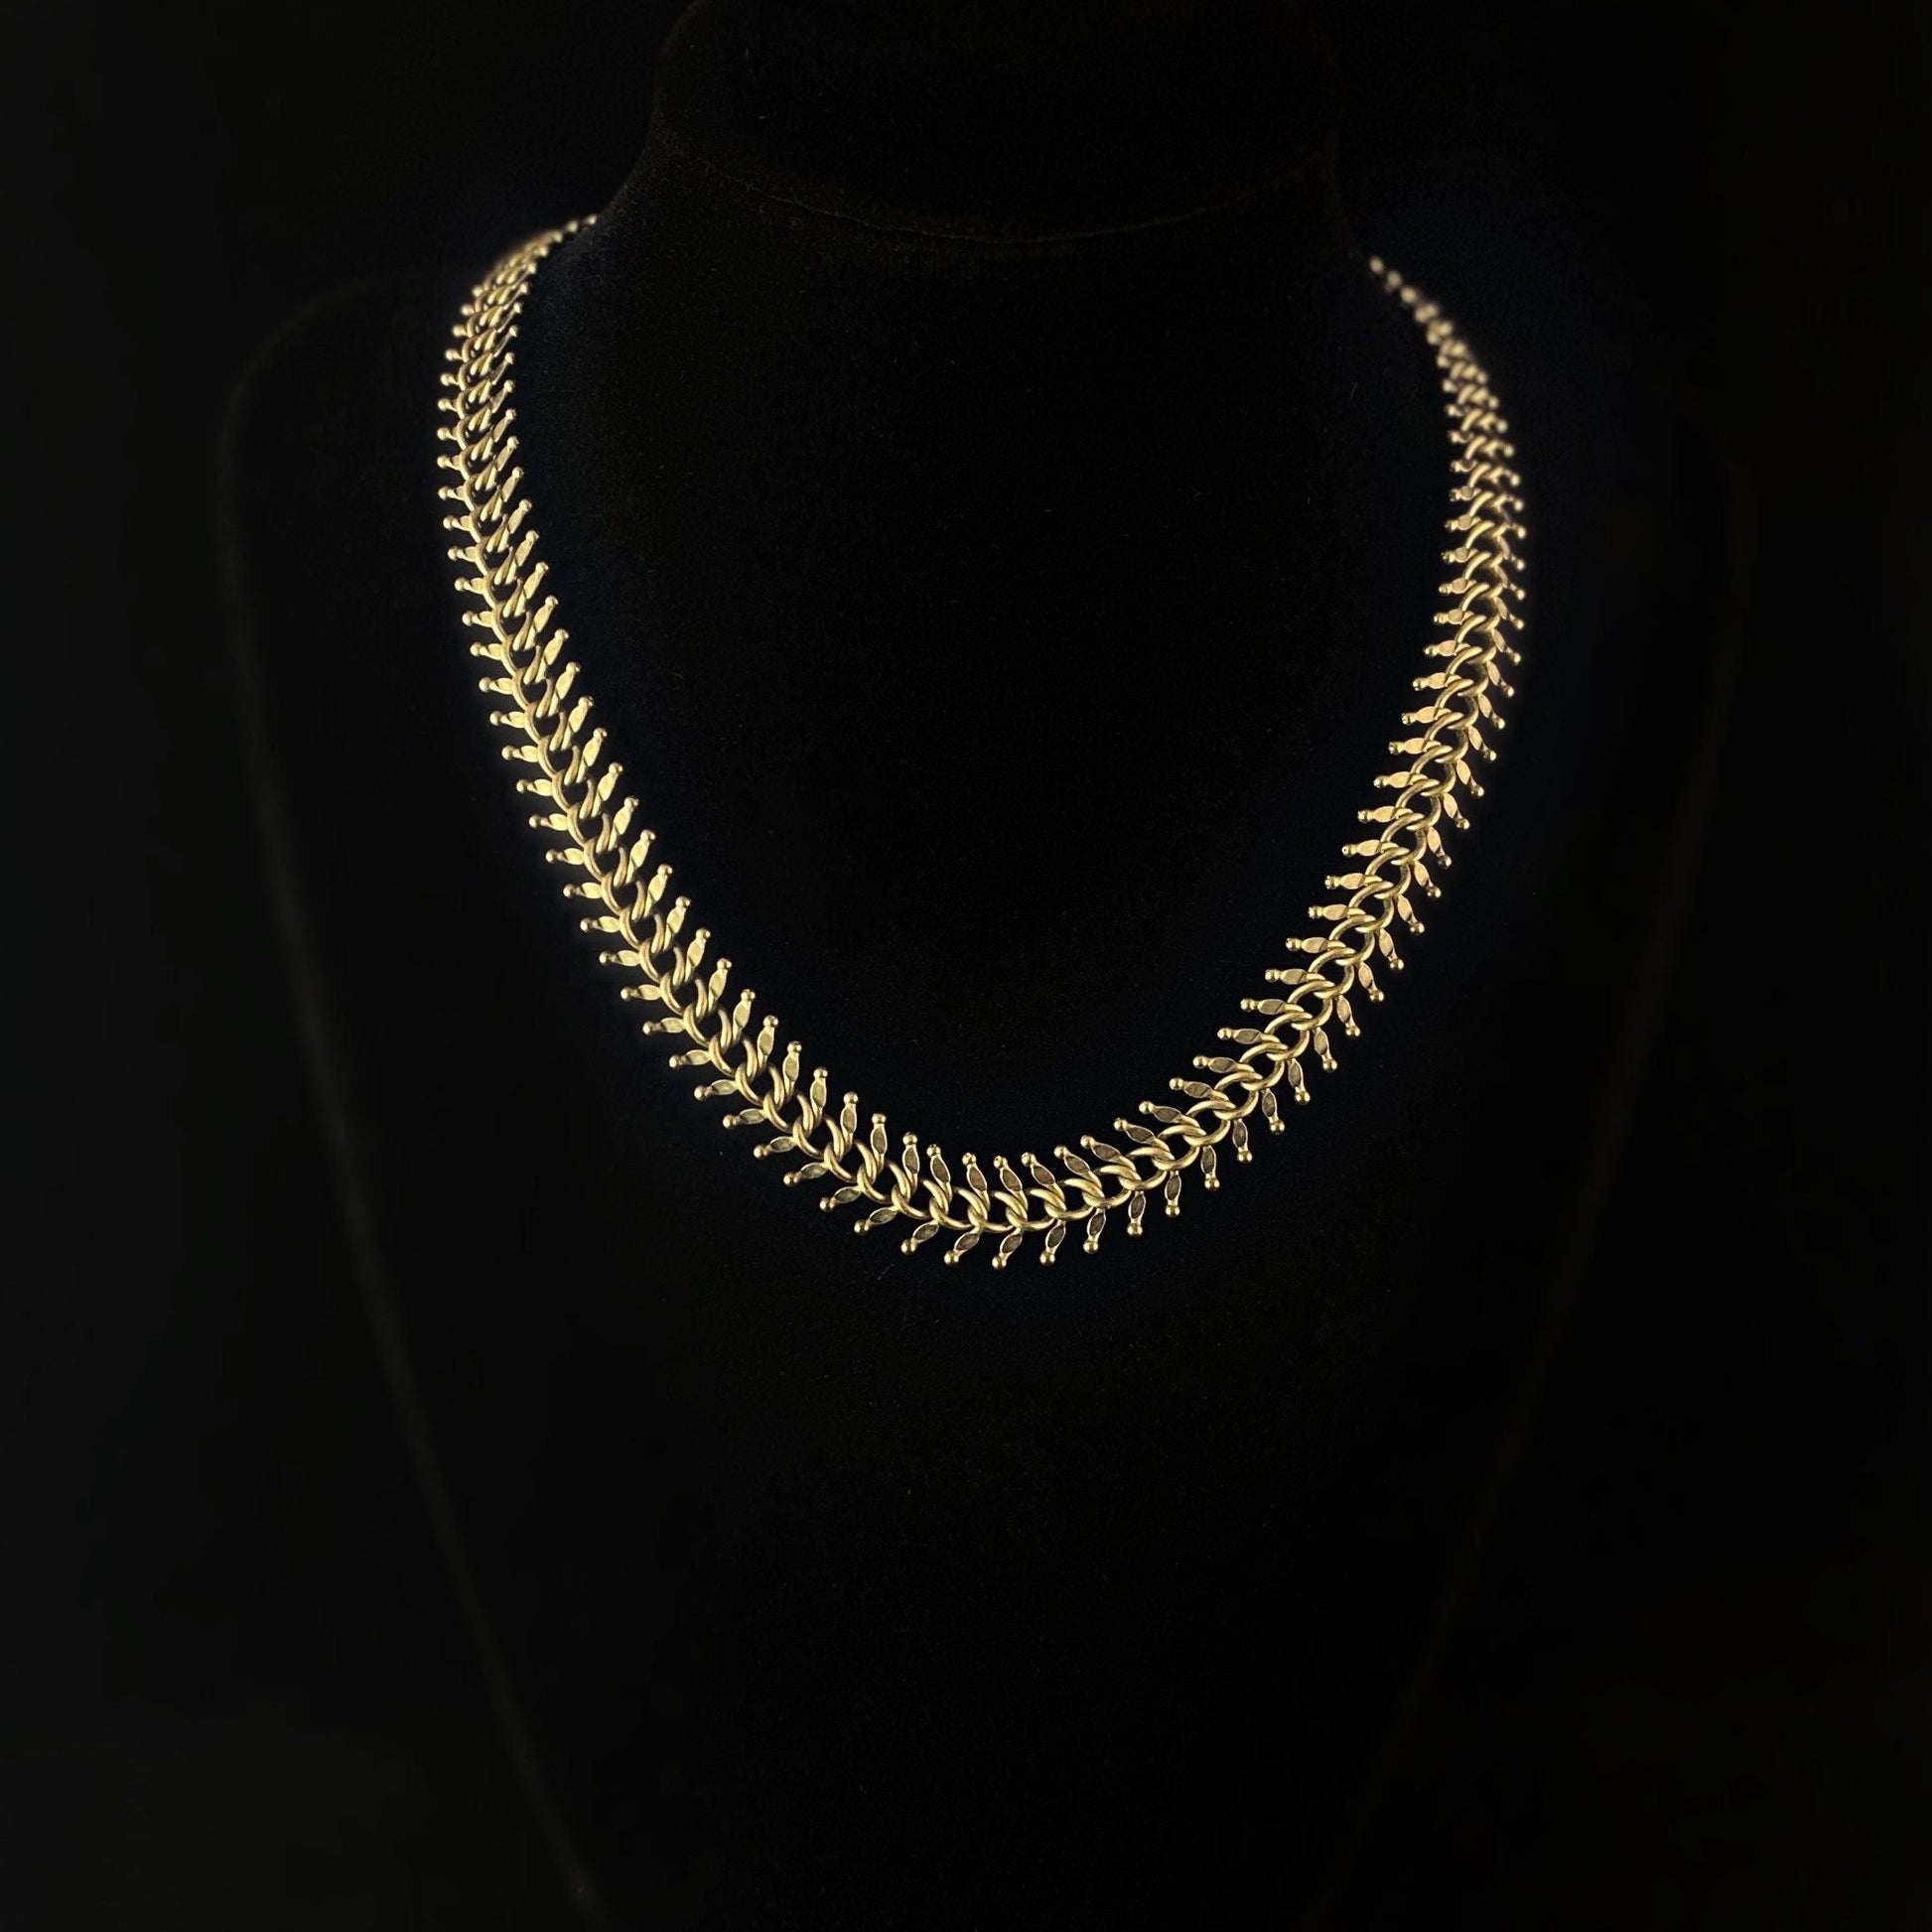 Fishbone Chain Art Deco Style Necklace - Oxidized Brass - David Aubrey Jewelry